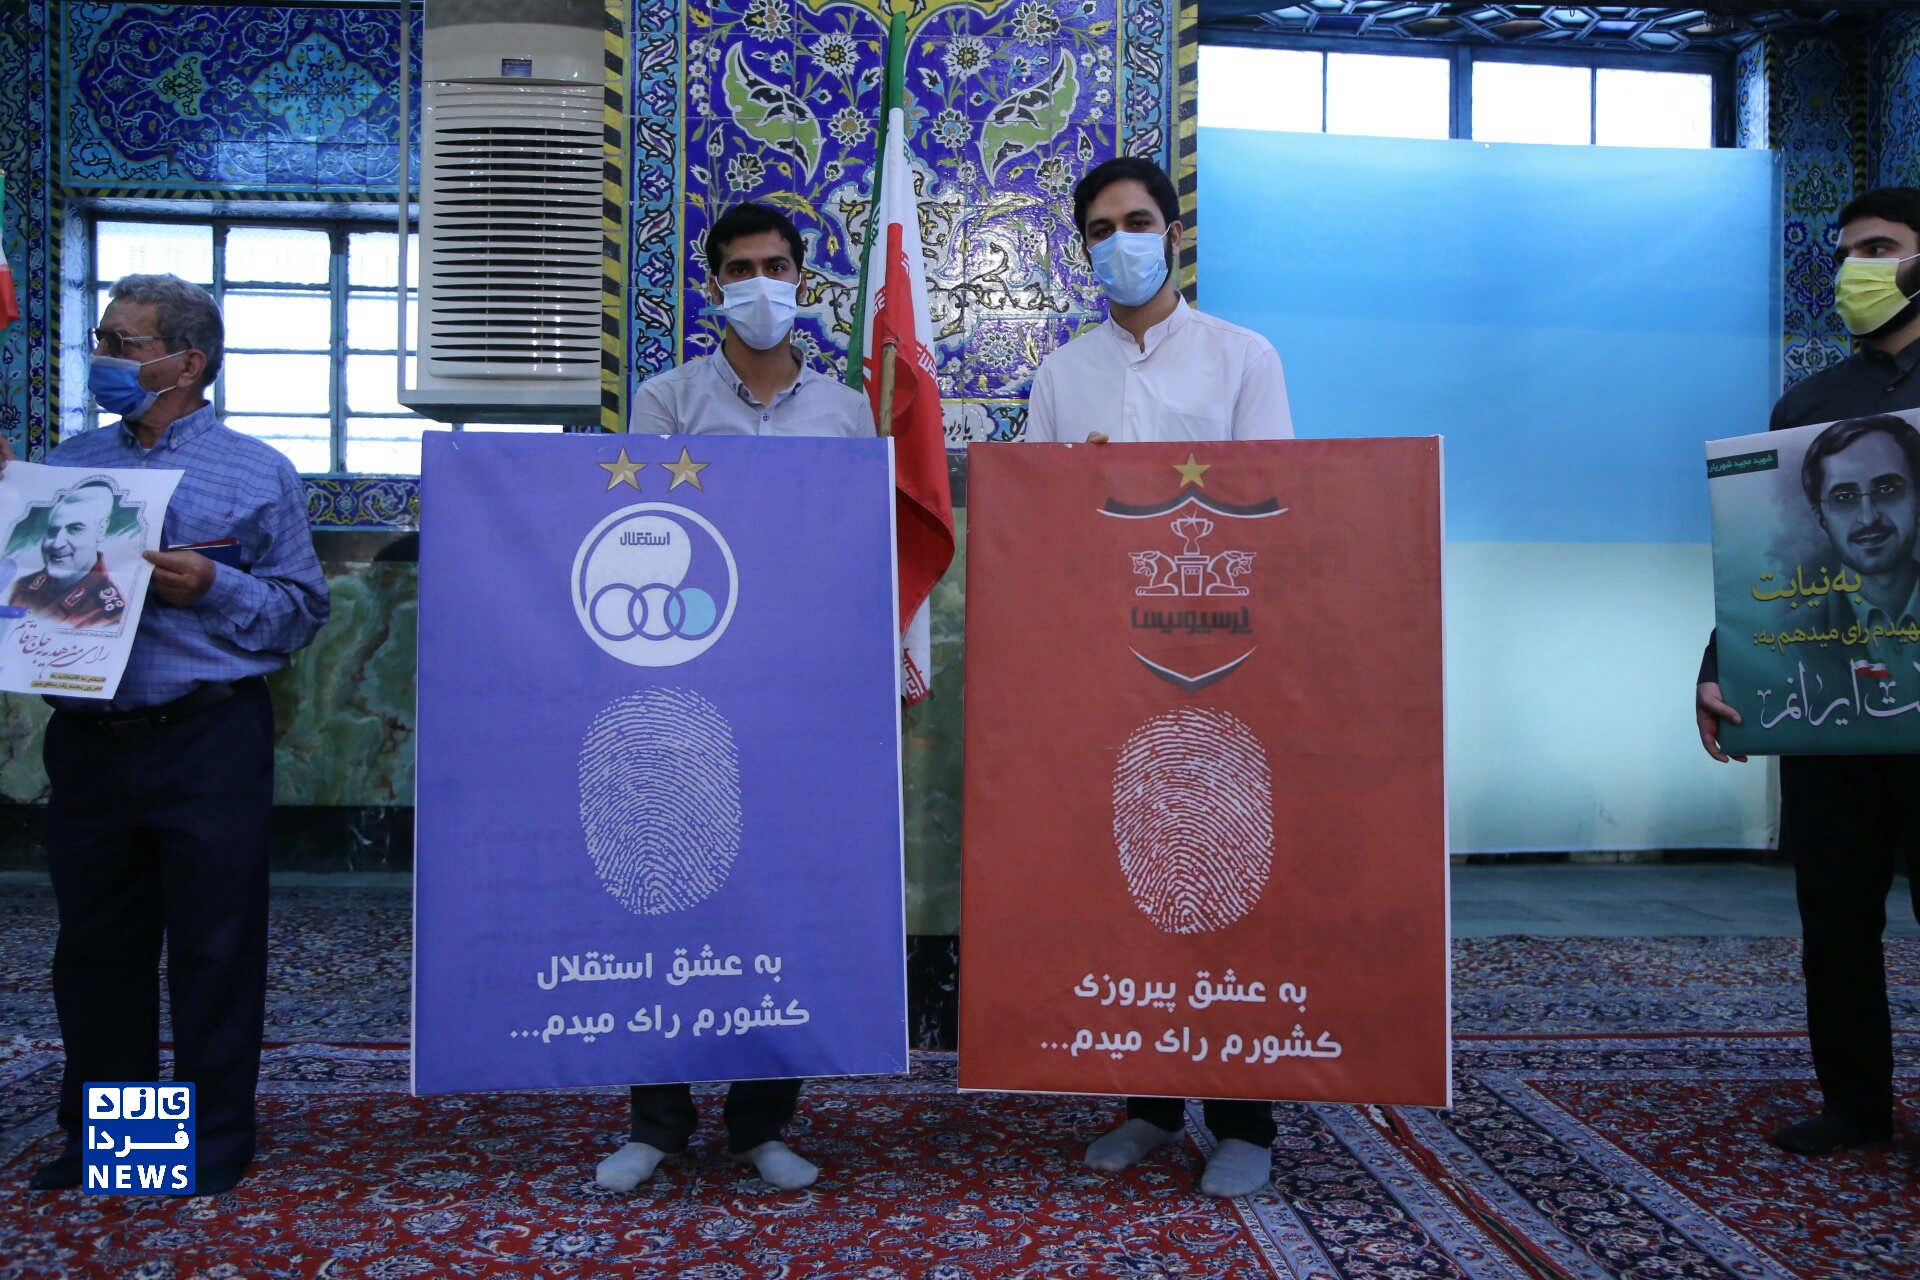  حضور گرم مردم و مسئولین یزد برای شرکت در انتخابات، محل مسجد حظیره روضه محمدیه